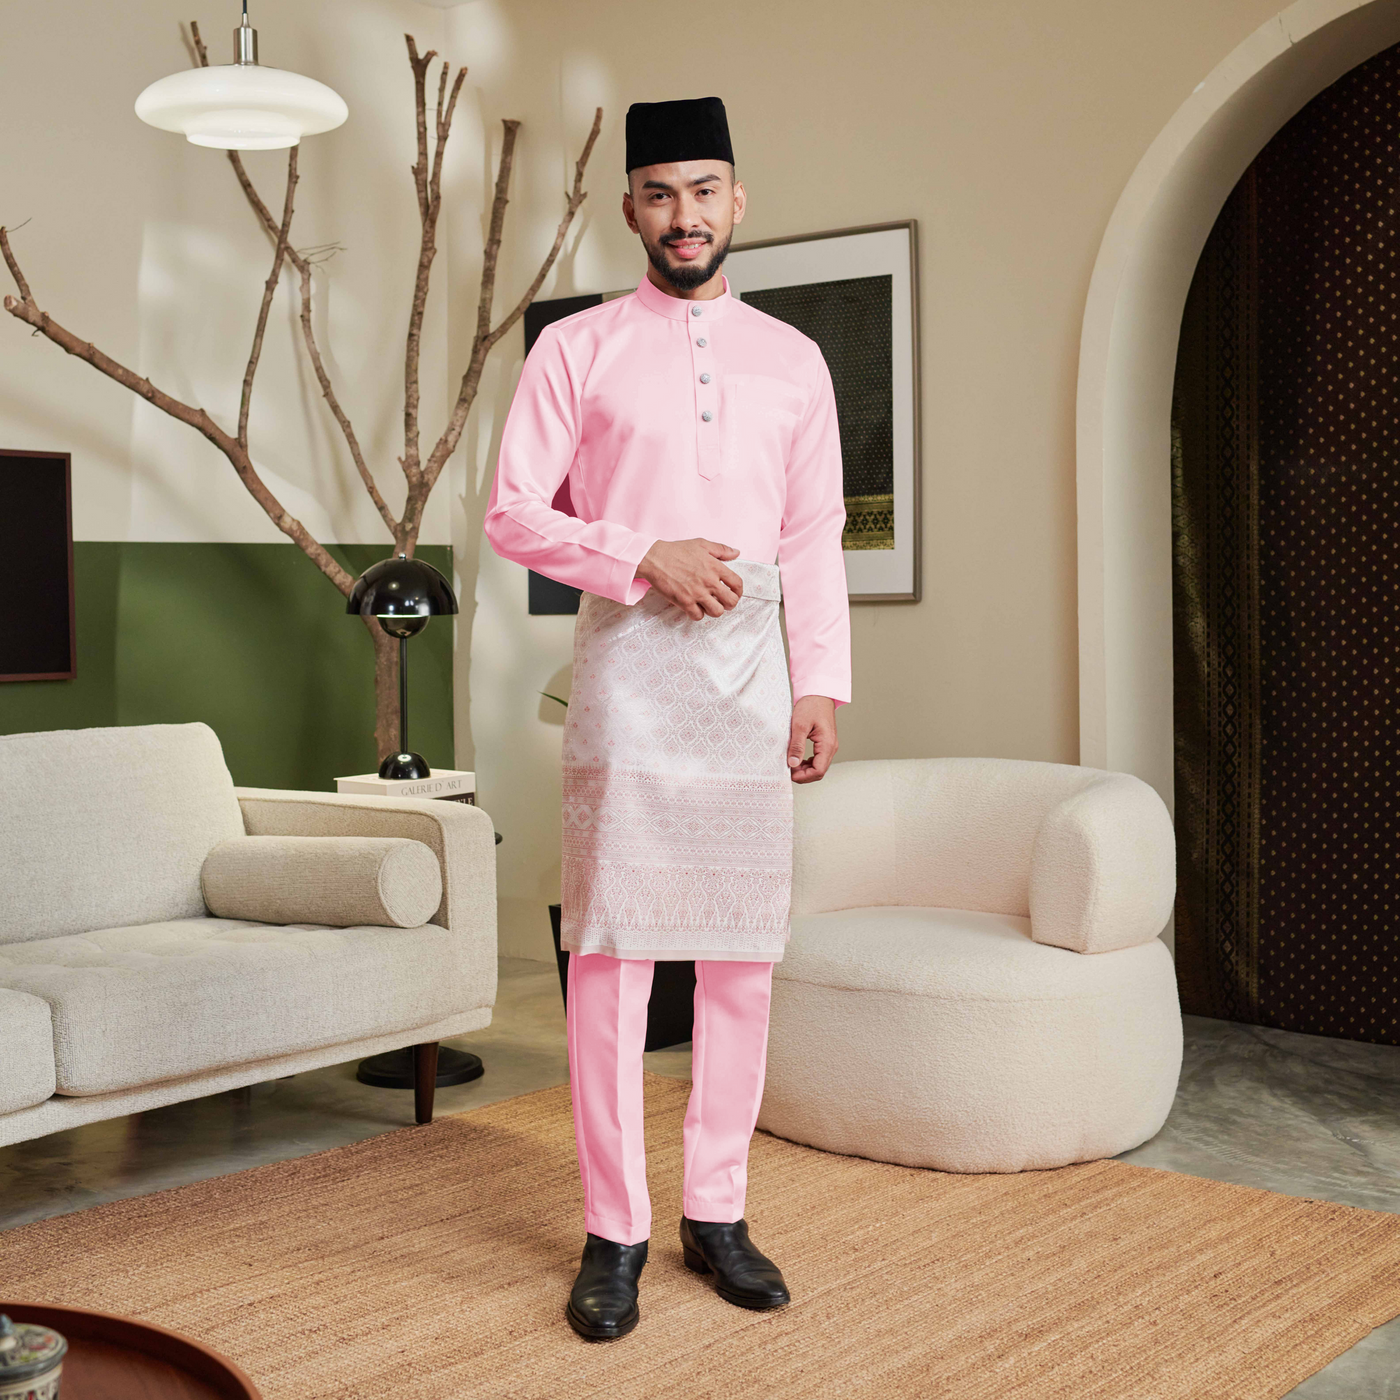 Baju Melayu Luxe - Salmon Pink